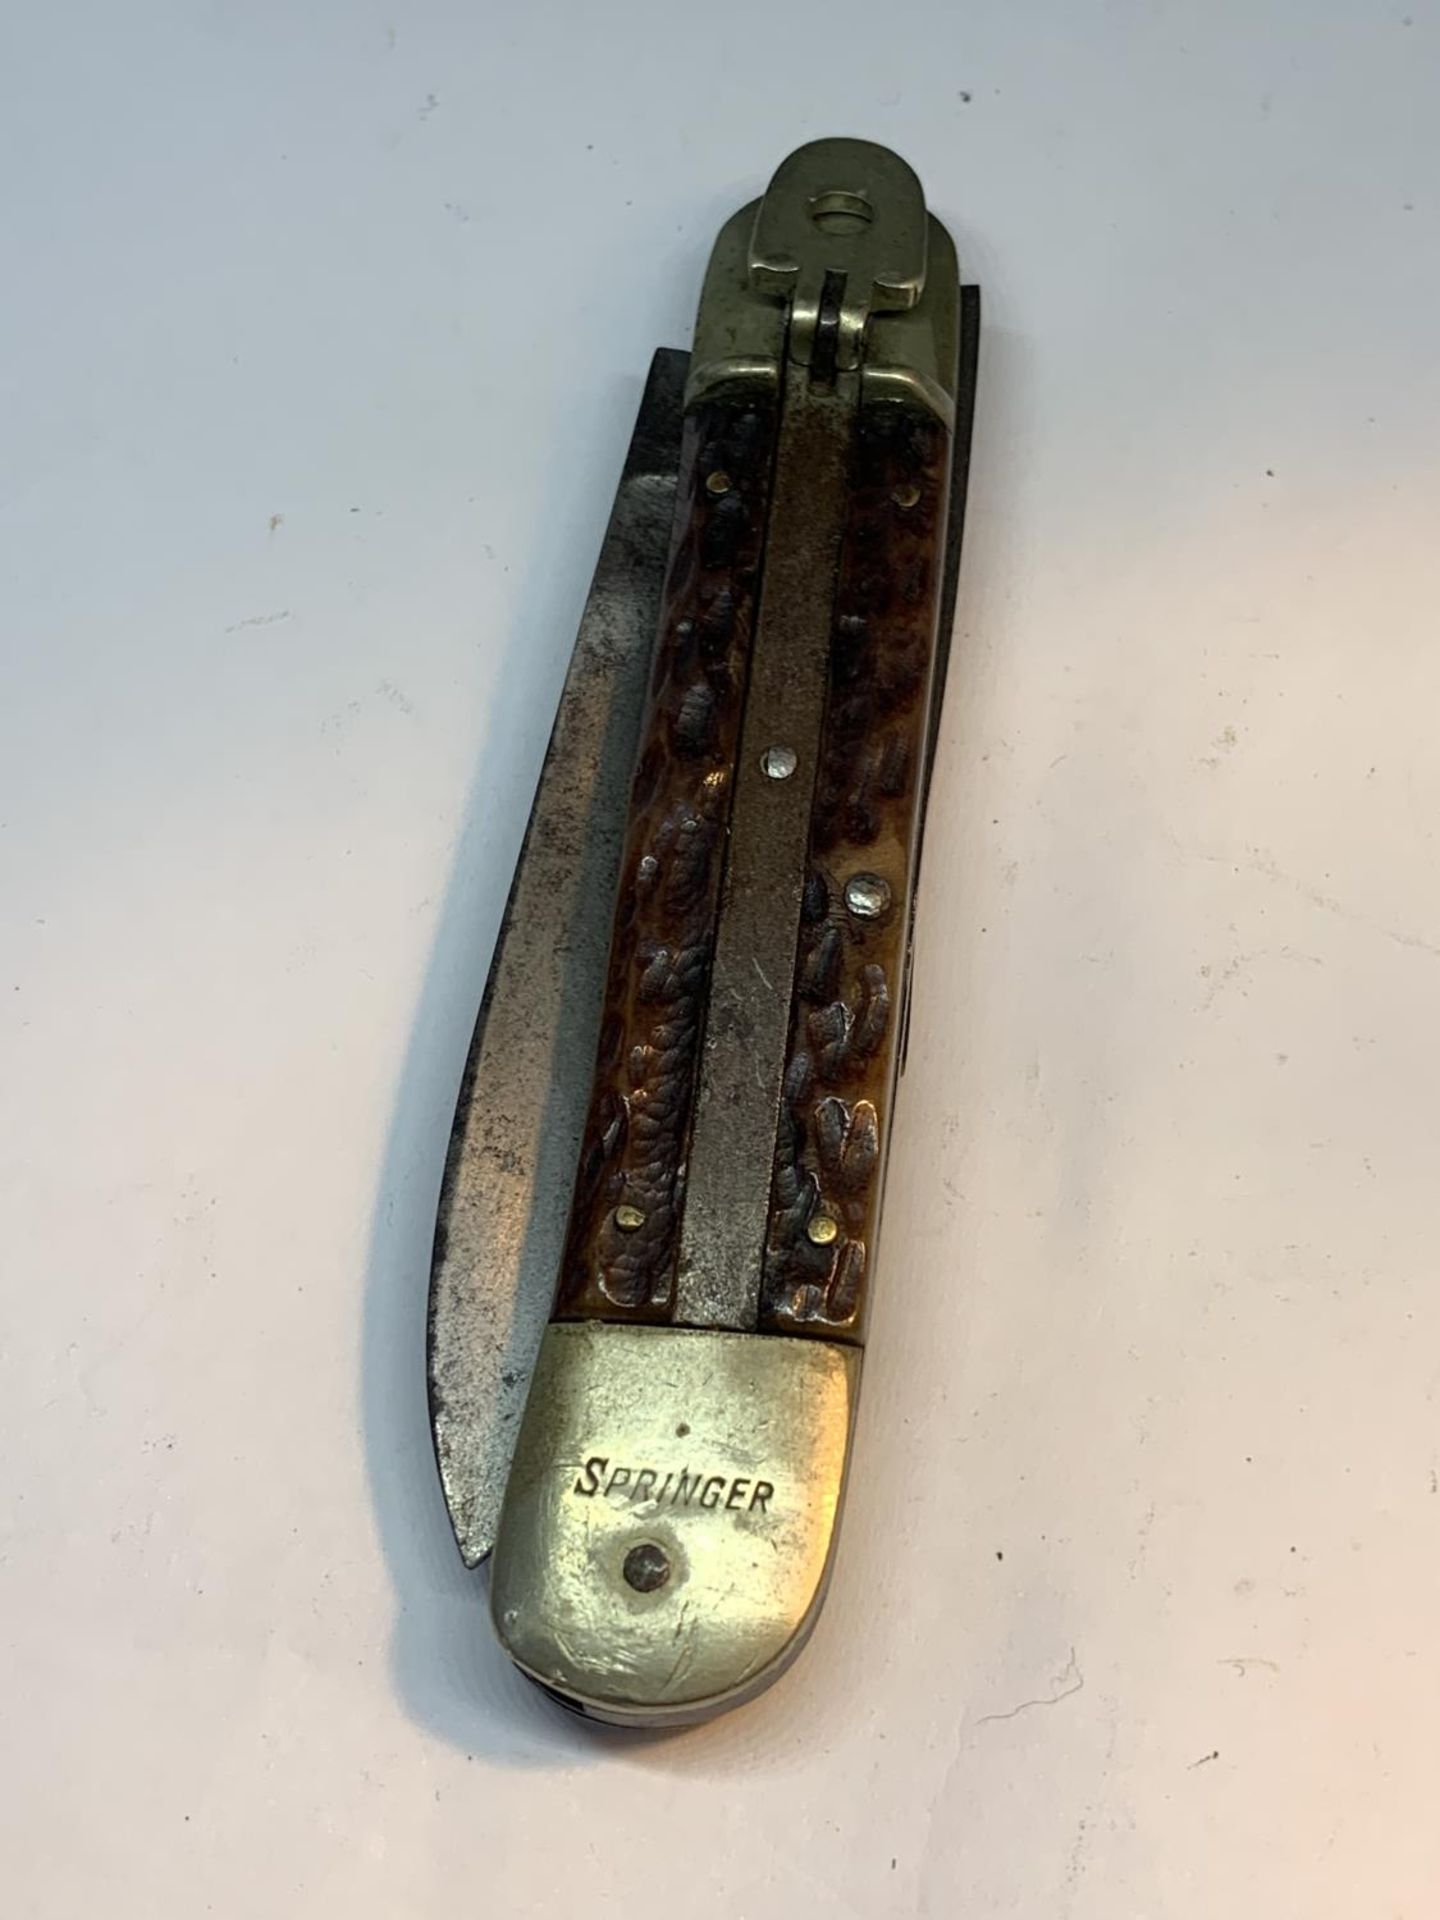 A VINTAGE SPRINGER GERMANY POCKET KNIFE